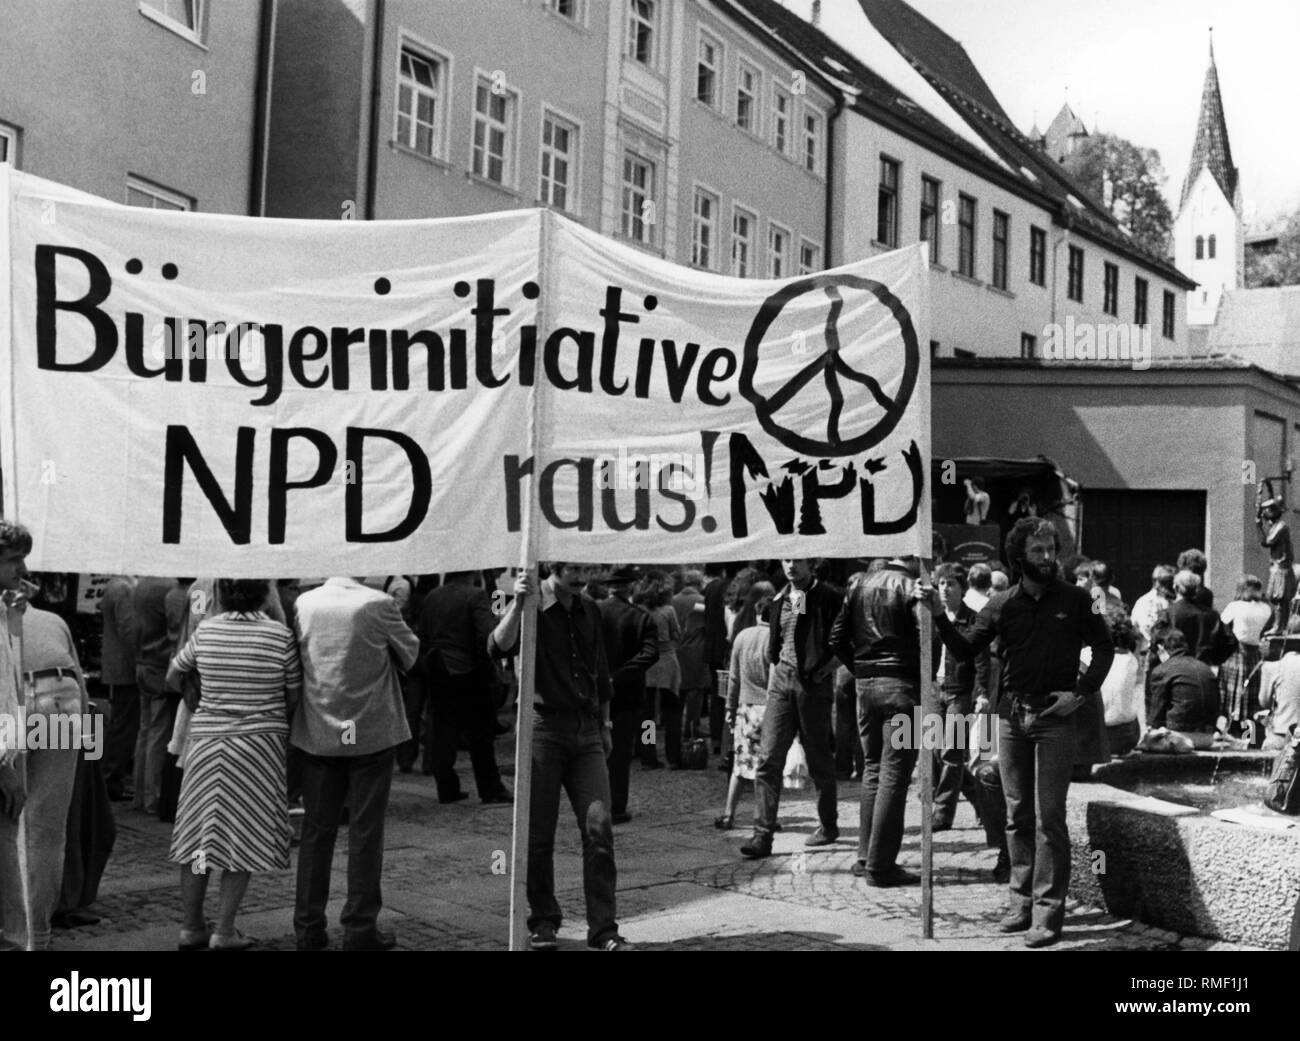 Dieses Foto zeigt die Teilnehmer an einer Demonstration gegen den NPD-Parteitag in Kaufbeuren. Auf der beiliegenden Banner steht: "Bürger Initiative NPD raus!' Stockfoto